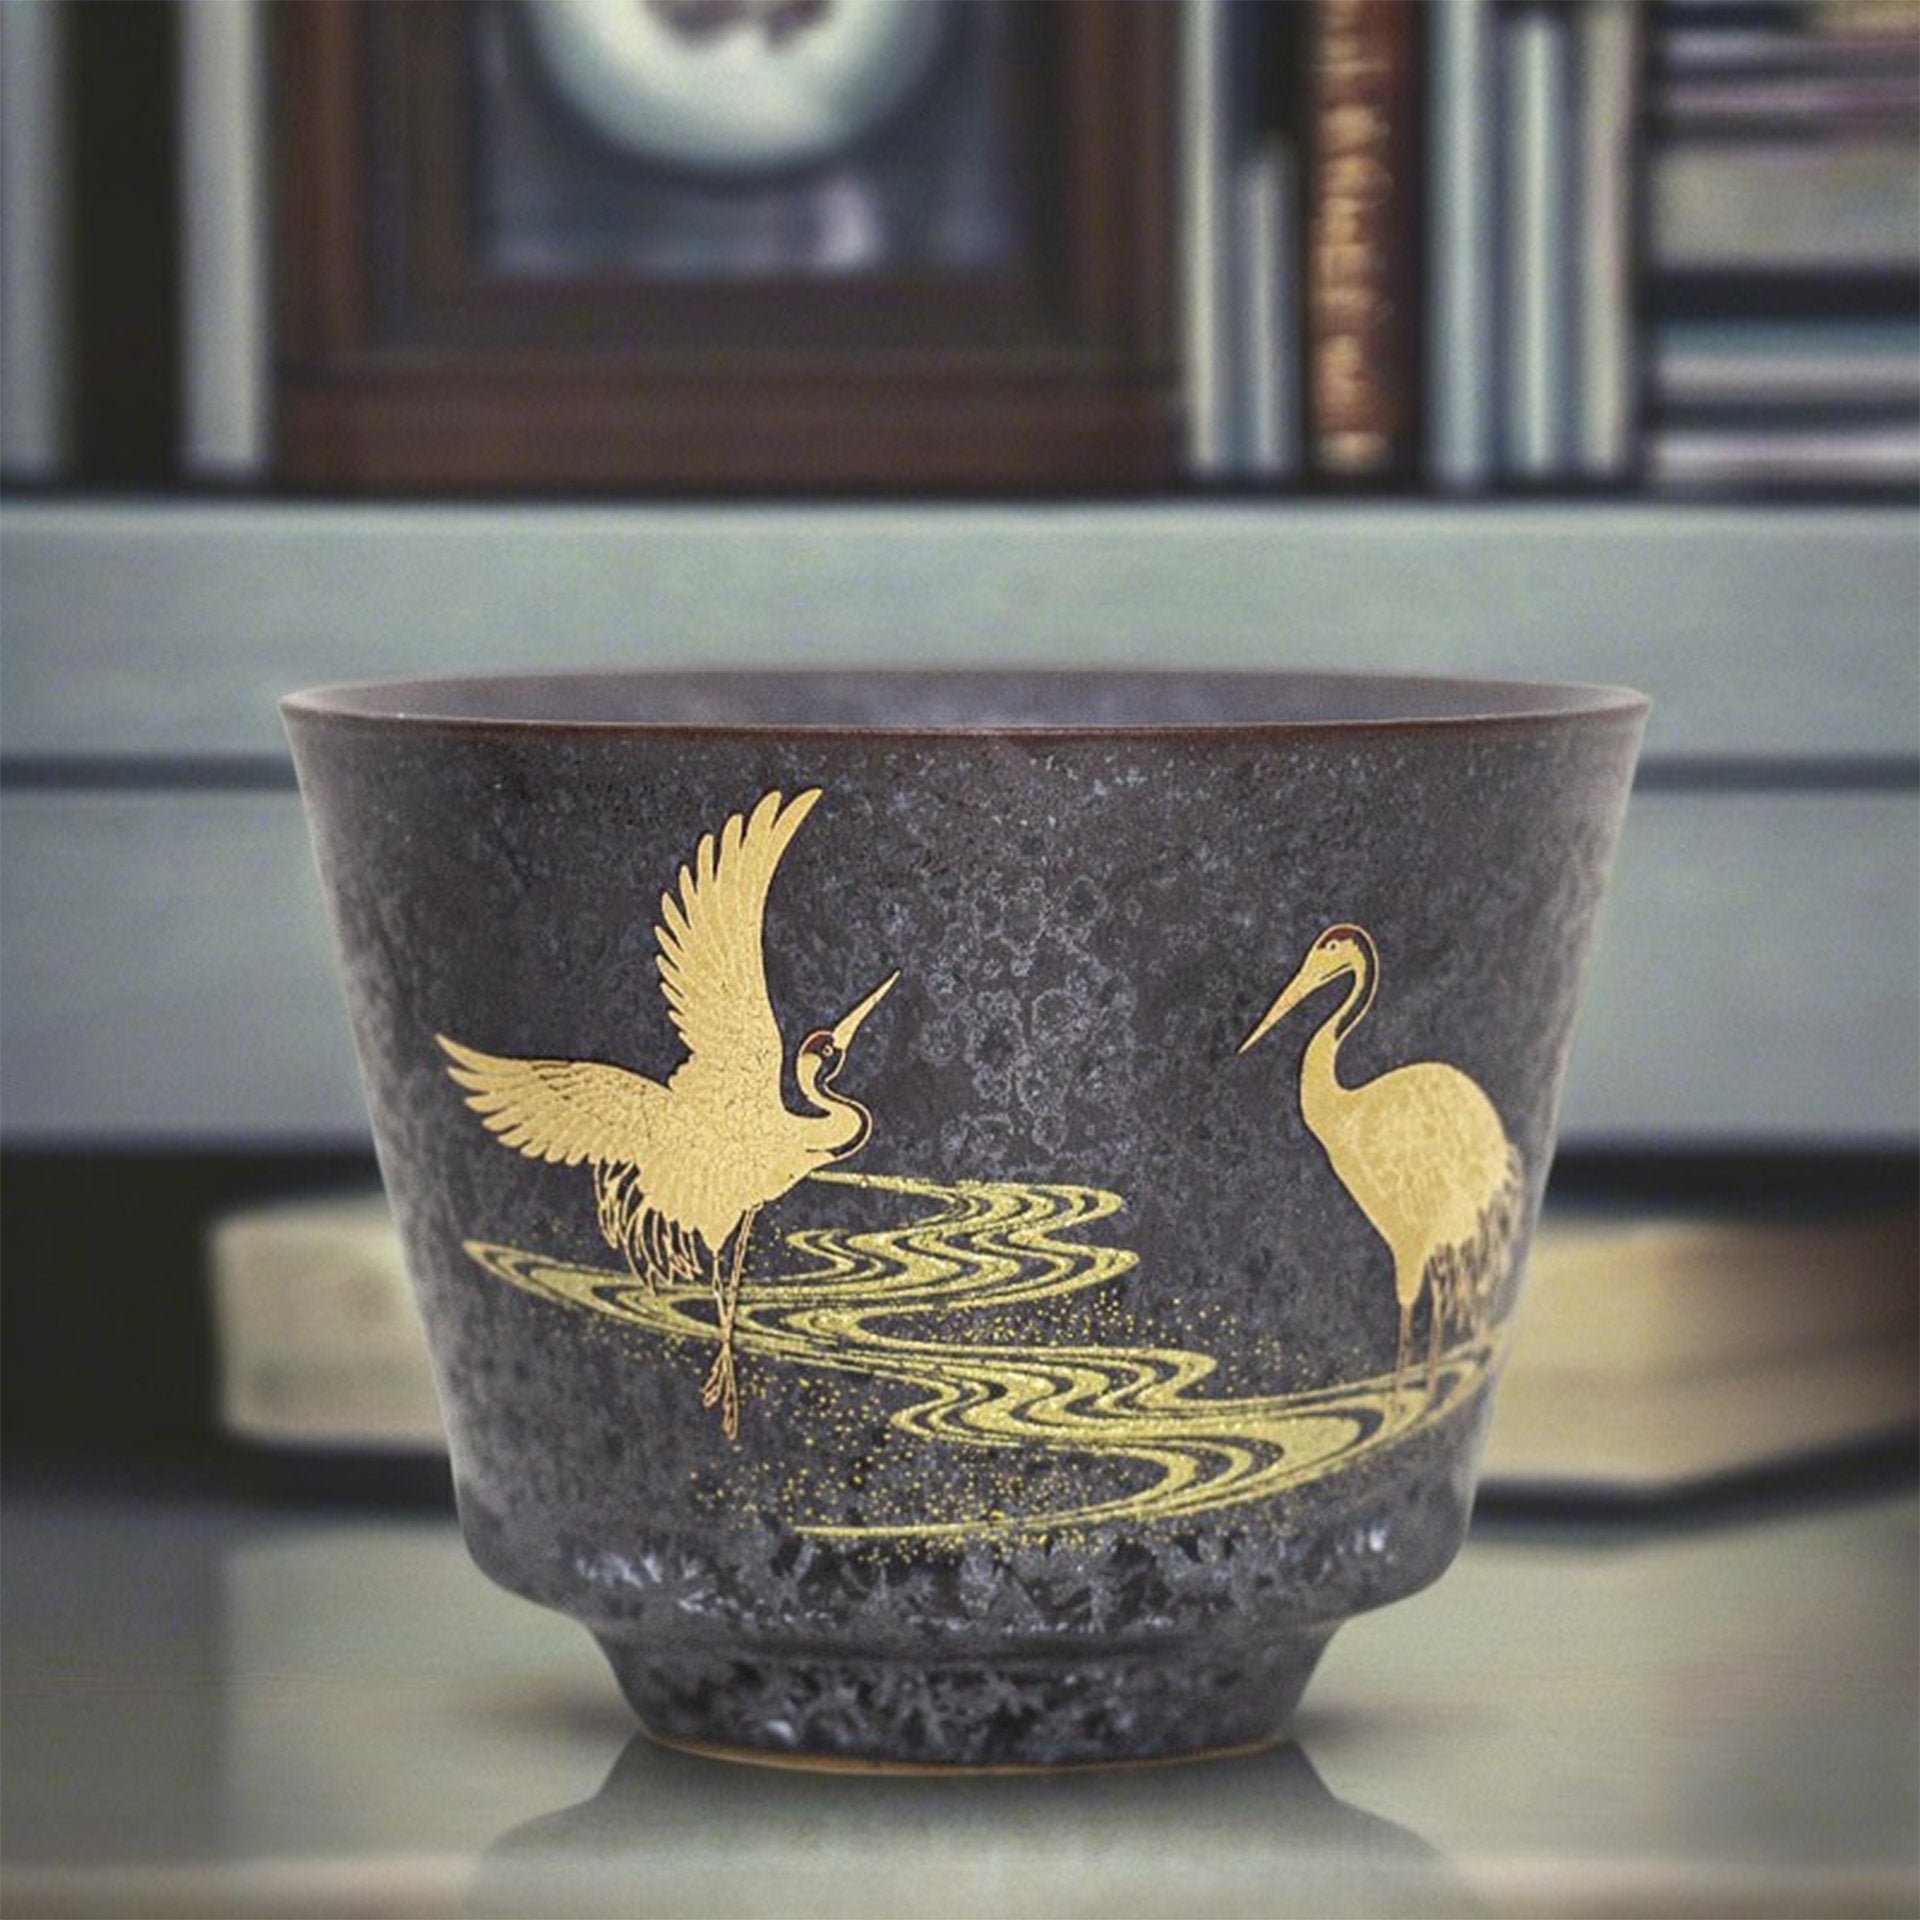 Japanese Tea Cup Set - Golden Crane